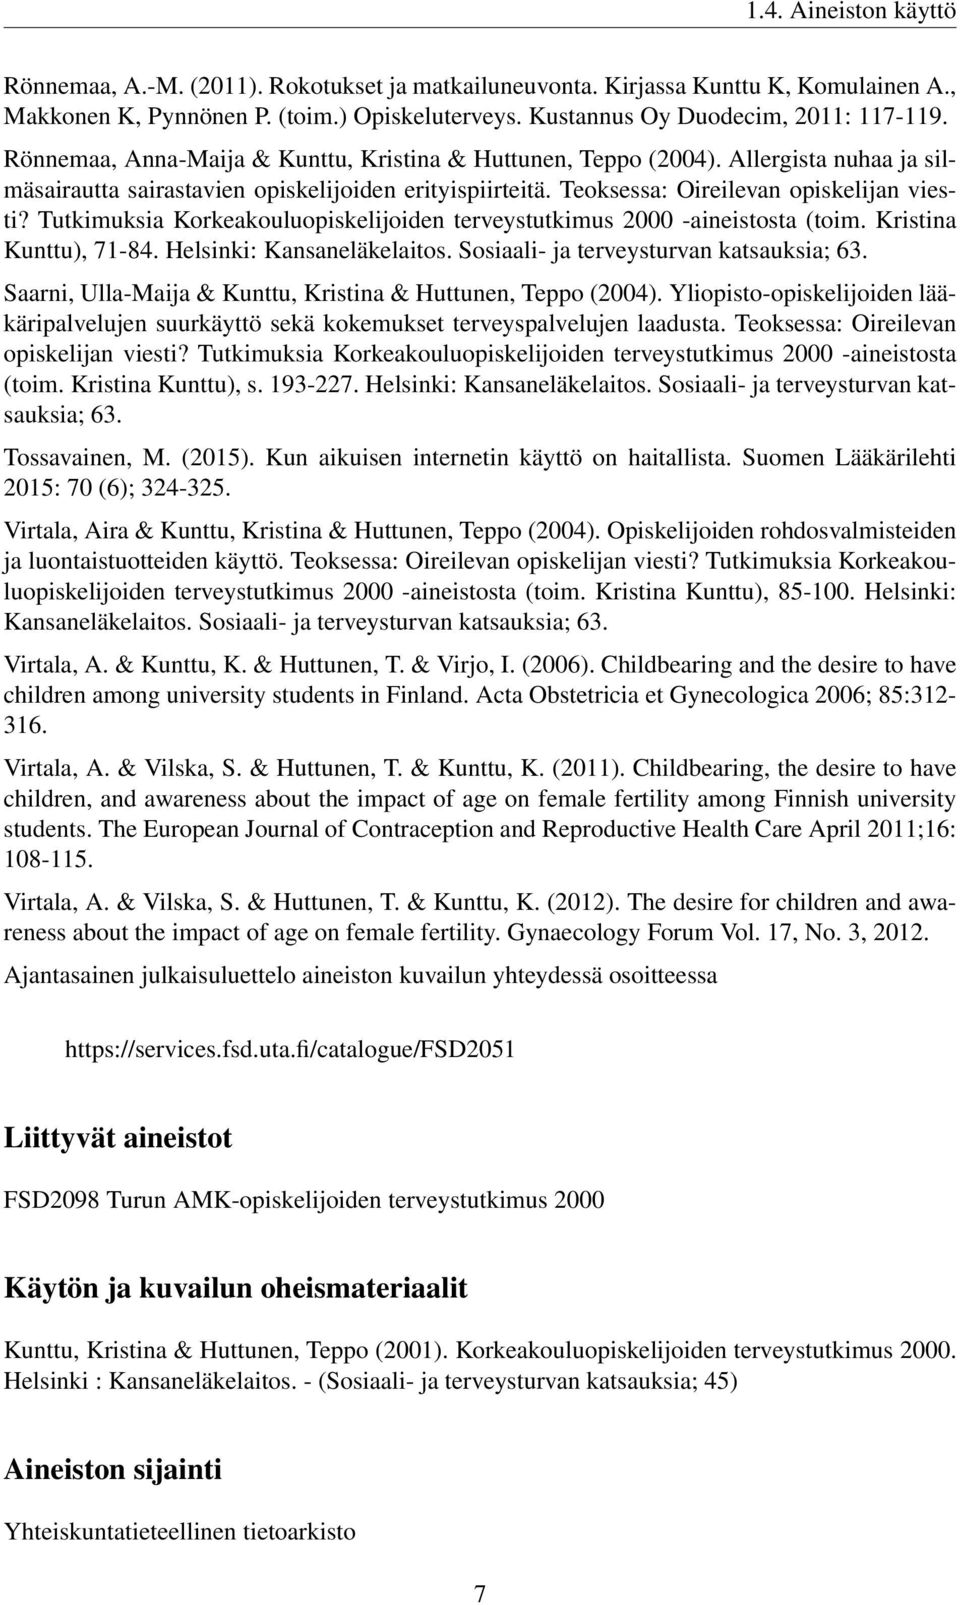 Tutkimuksia Korkeakouluopiskelijoiden terveystutkimus 2000 -aineistosta (toim. Kristina Kunttu), 71-84. Helsinki: Kansaneläkelaitos. Sosiaali- ja terveysturvan katsauksia; 63.